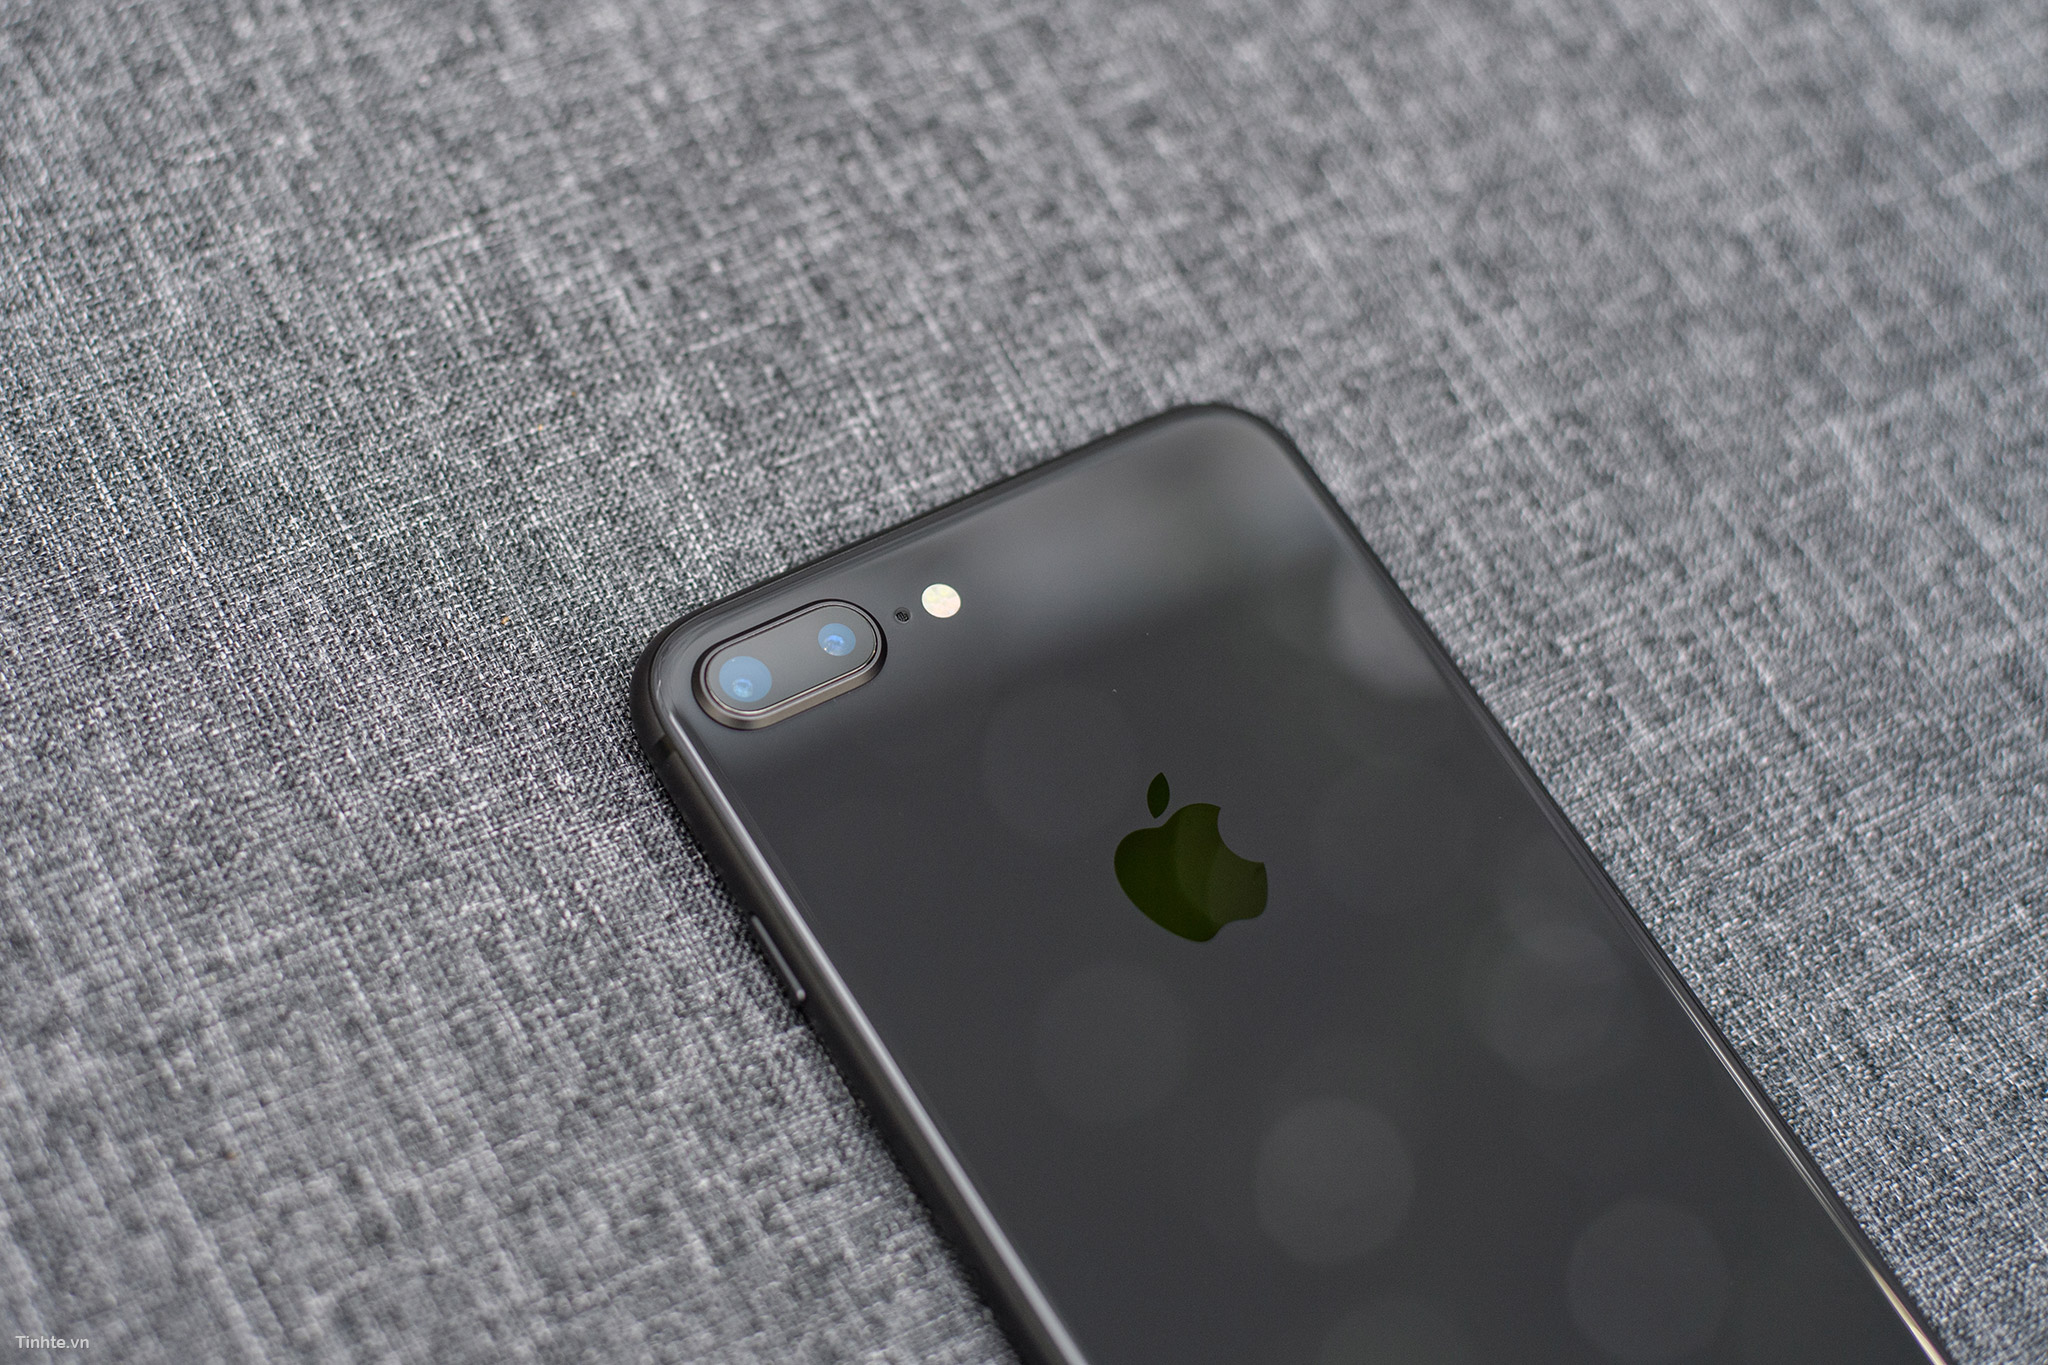 iPhone 8/8 Plus Space Gray: Trời đã tối đen nhưng iPhone 8/8 Plus màu Space Gray lại sáng rực trong bóng tối nhờ đèn flash chính xác. Thiết kế hoàn hảo cùng độ bền vượt trội của nó đảm bảo sẽ là người bạn đồng hành tin cậy của bạn. Hãy xem hình ảnh và cảm nhận về sự tỉ mỉ trong từng chi tiết.